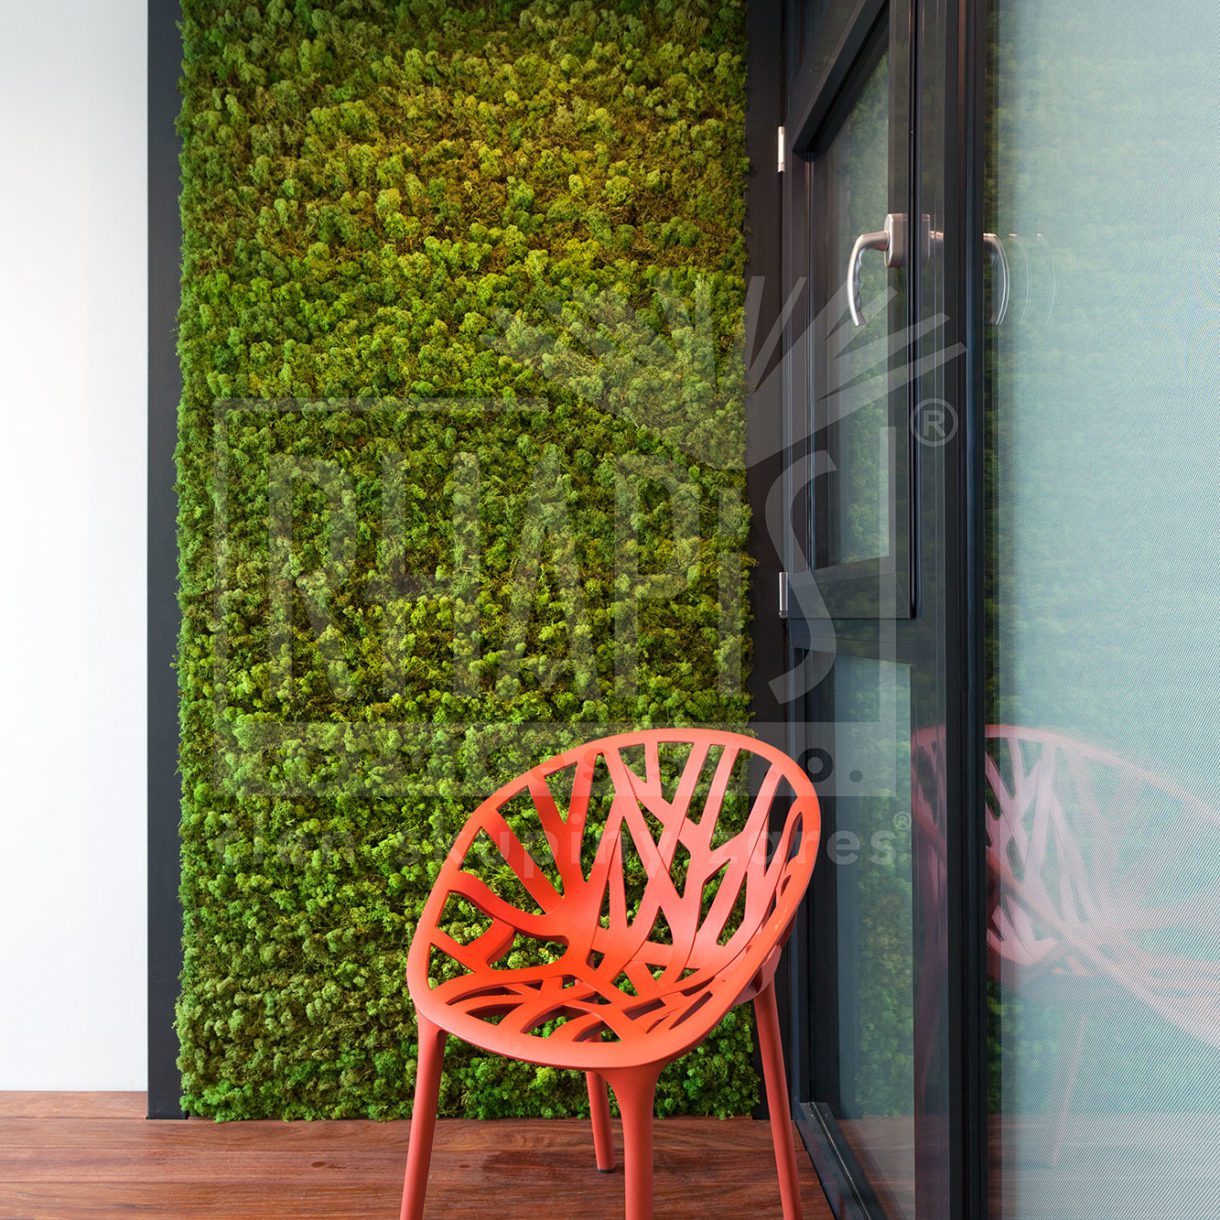 Moss green walls